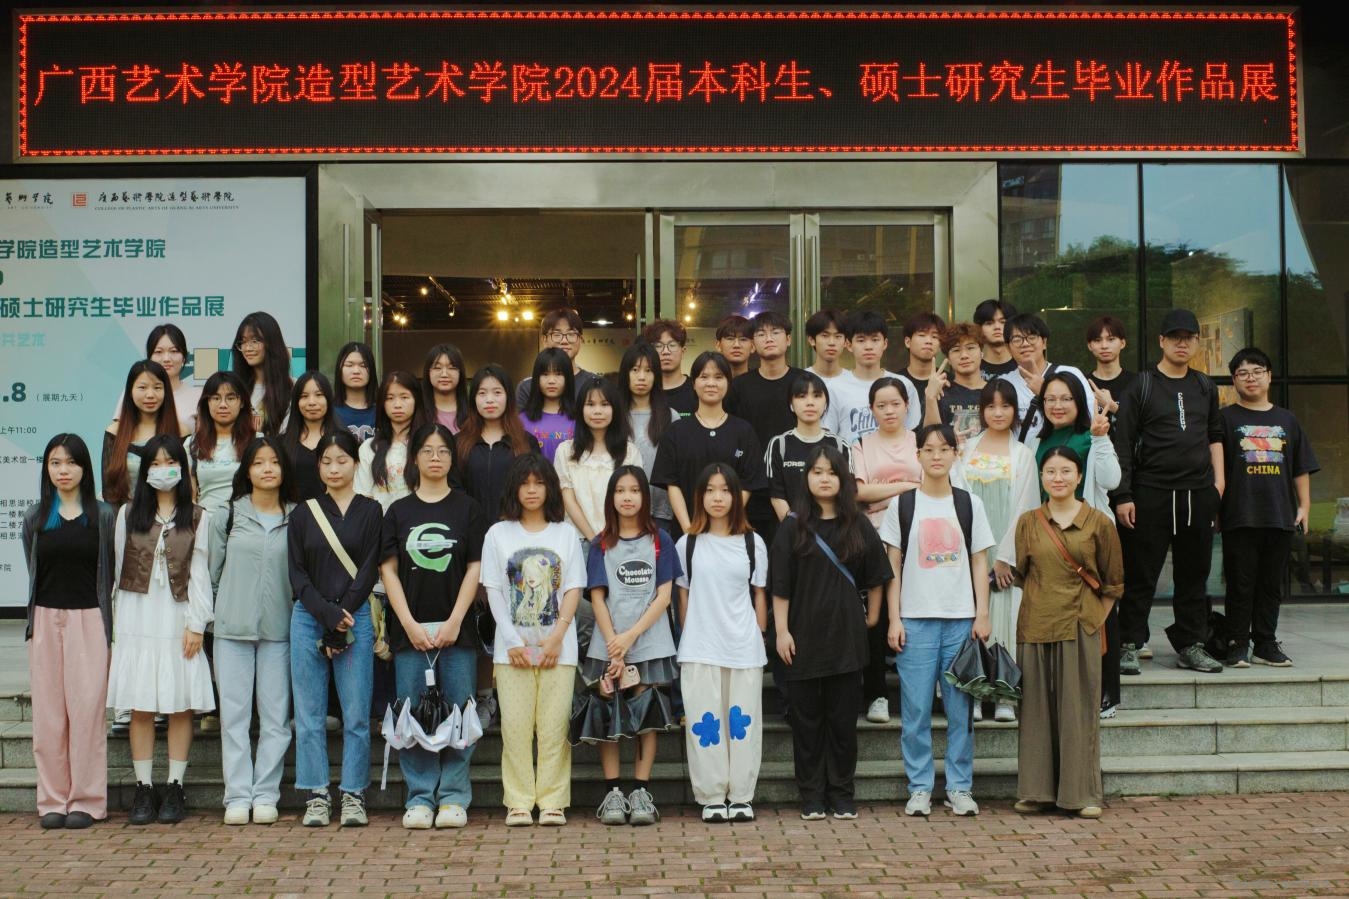 艺术系组织视觉传达设计专业学生赴广西艺术学院开展课程调研活动